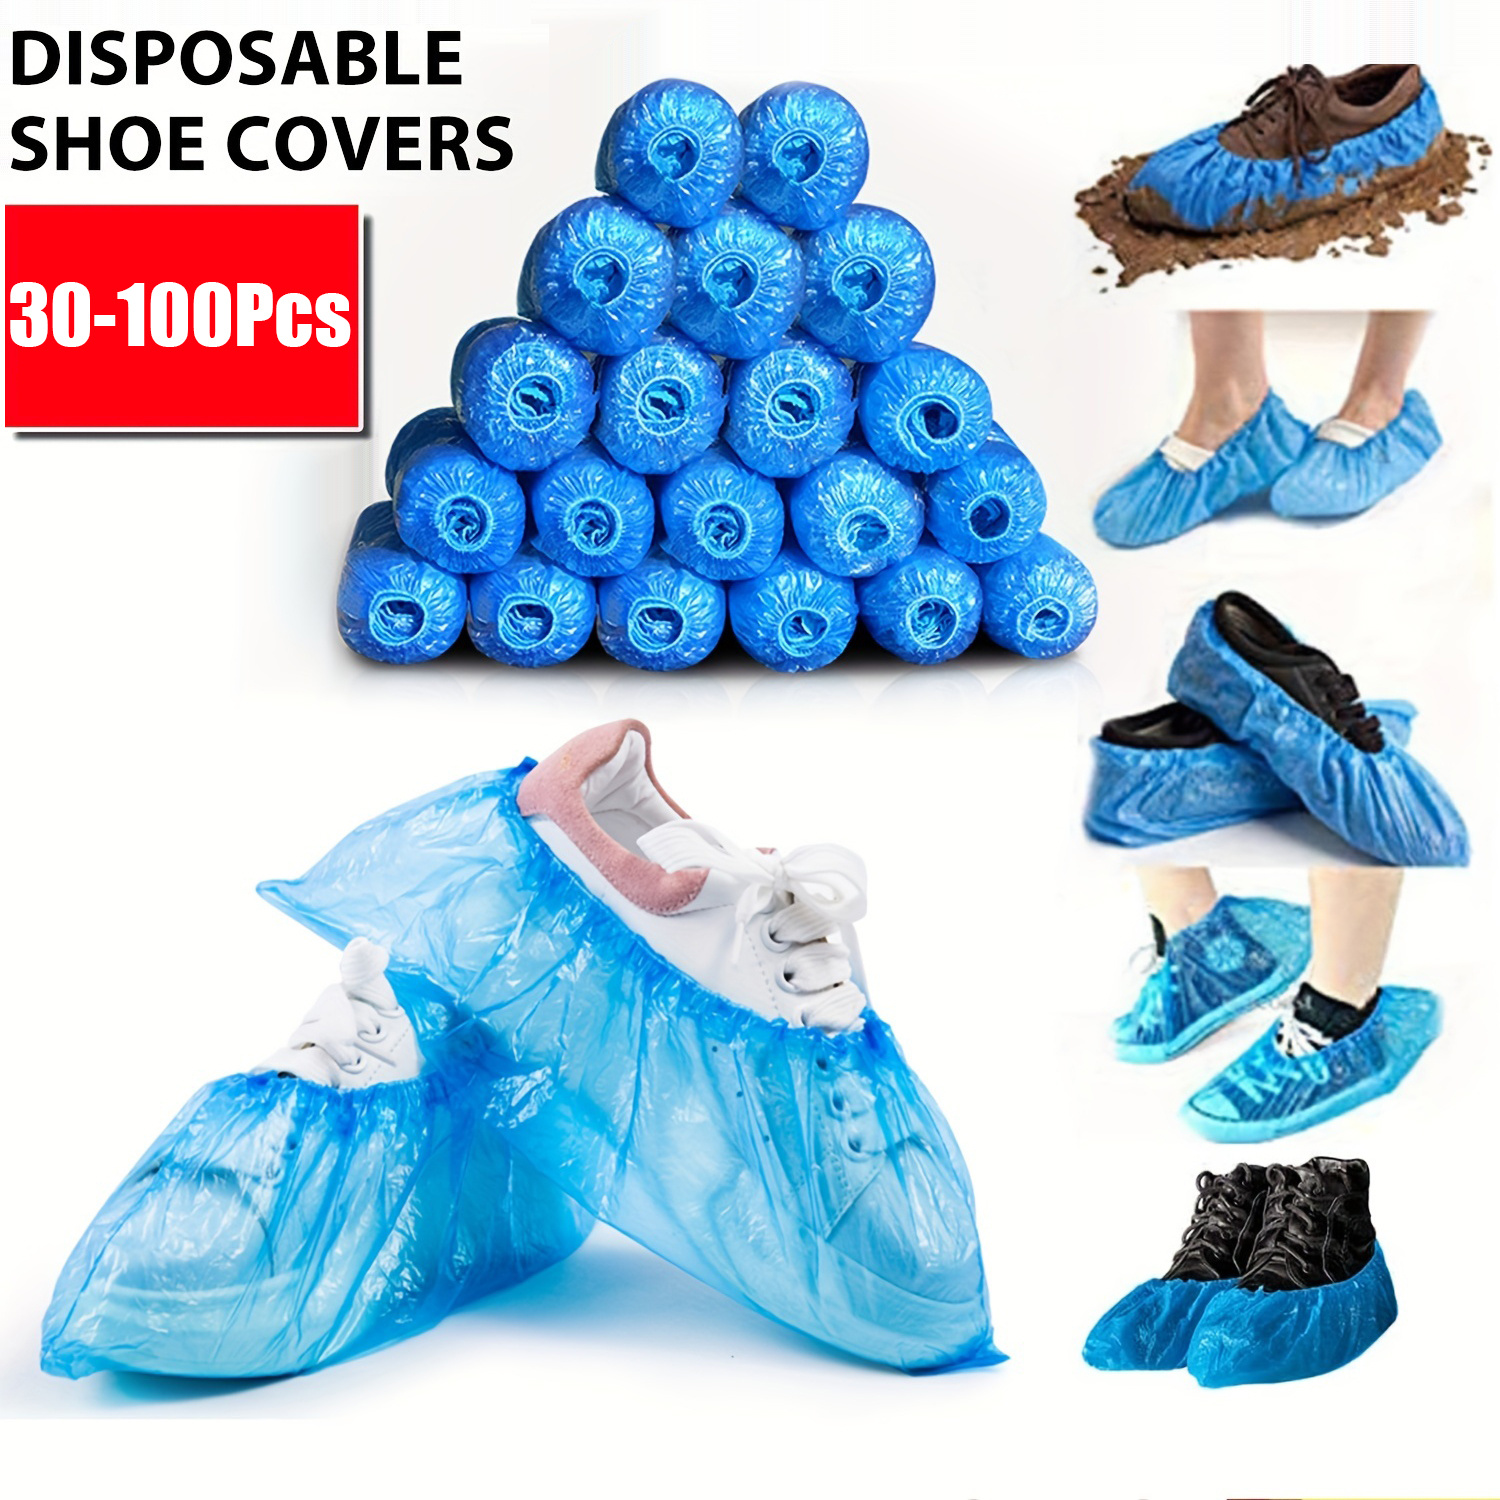 Cubiertas de zapatos desechables impermeables de plástico